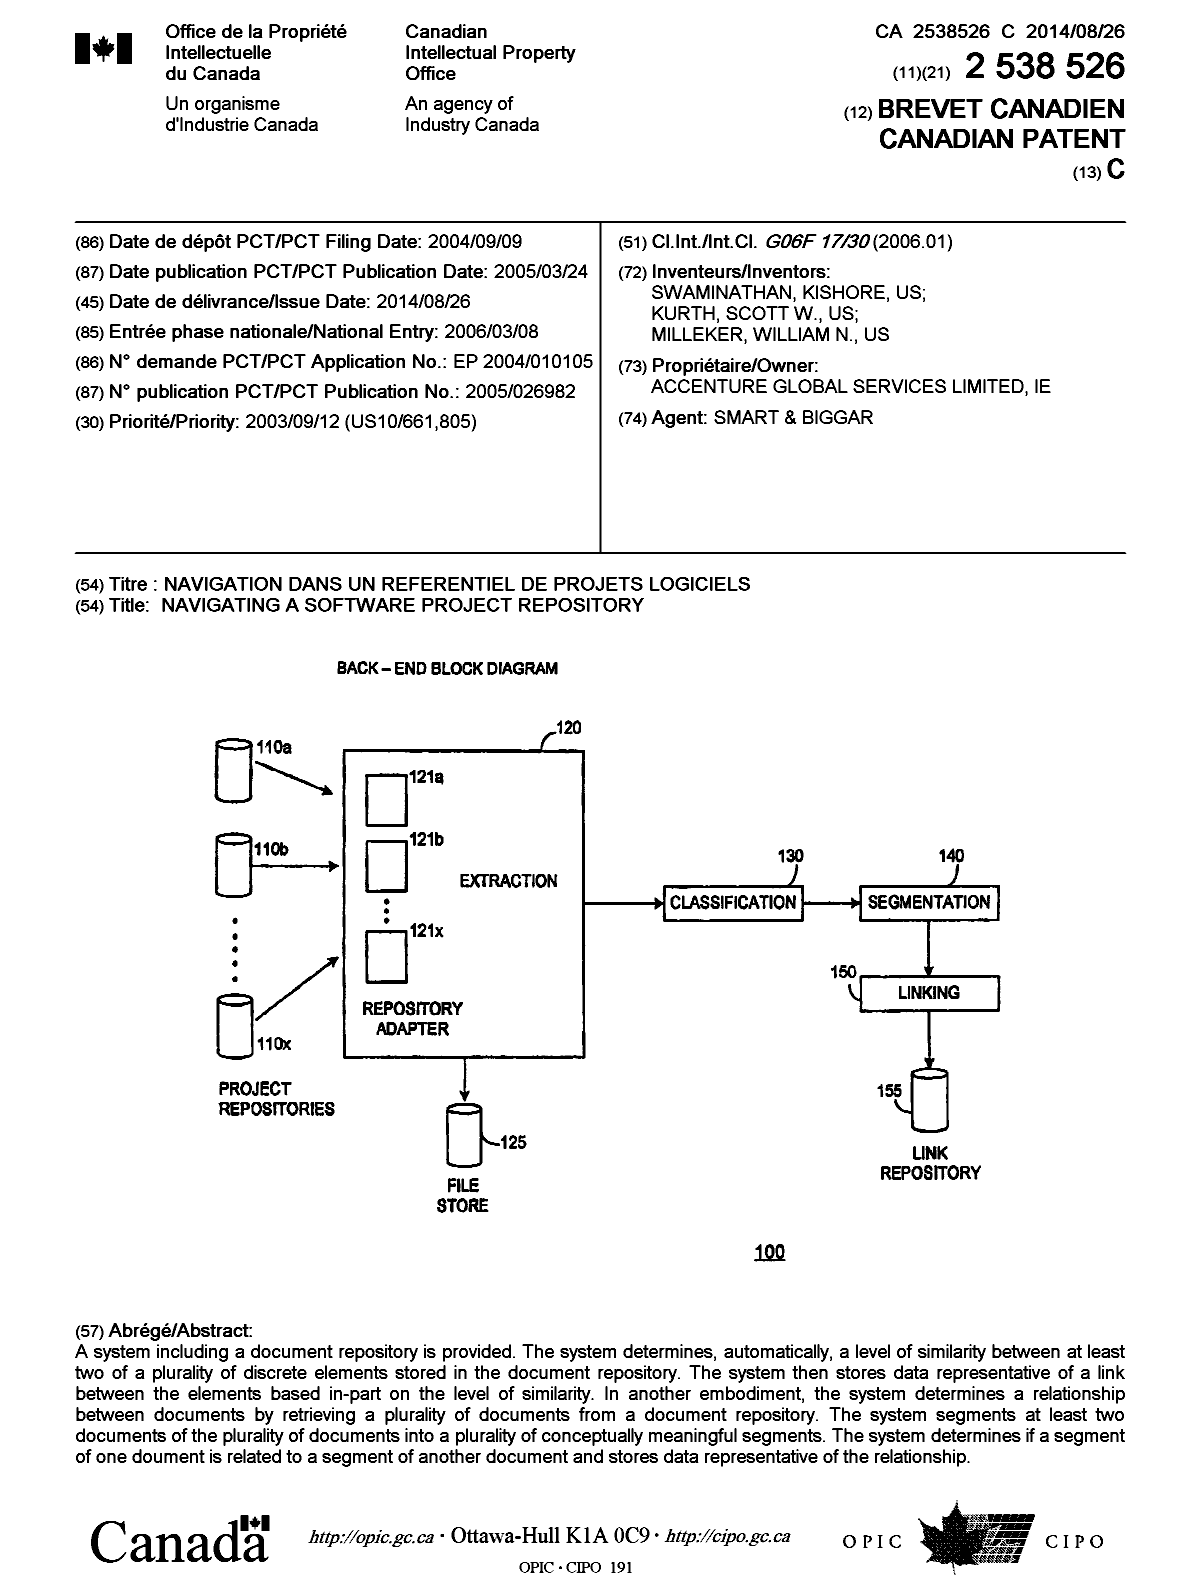 Document de brevet canadien 2538526. Page couverture 20140729. Image 1 de 1